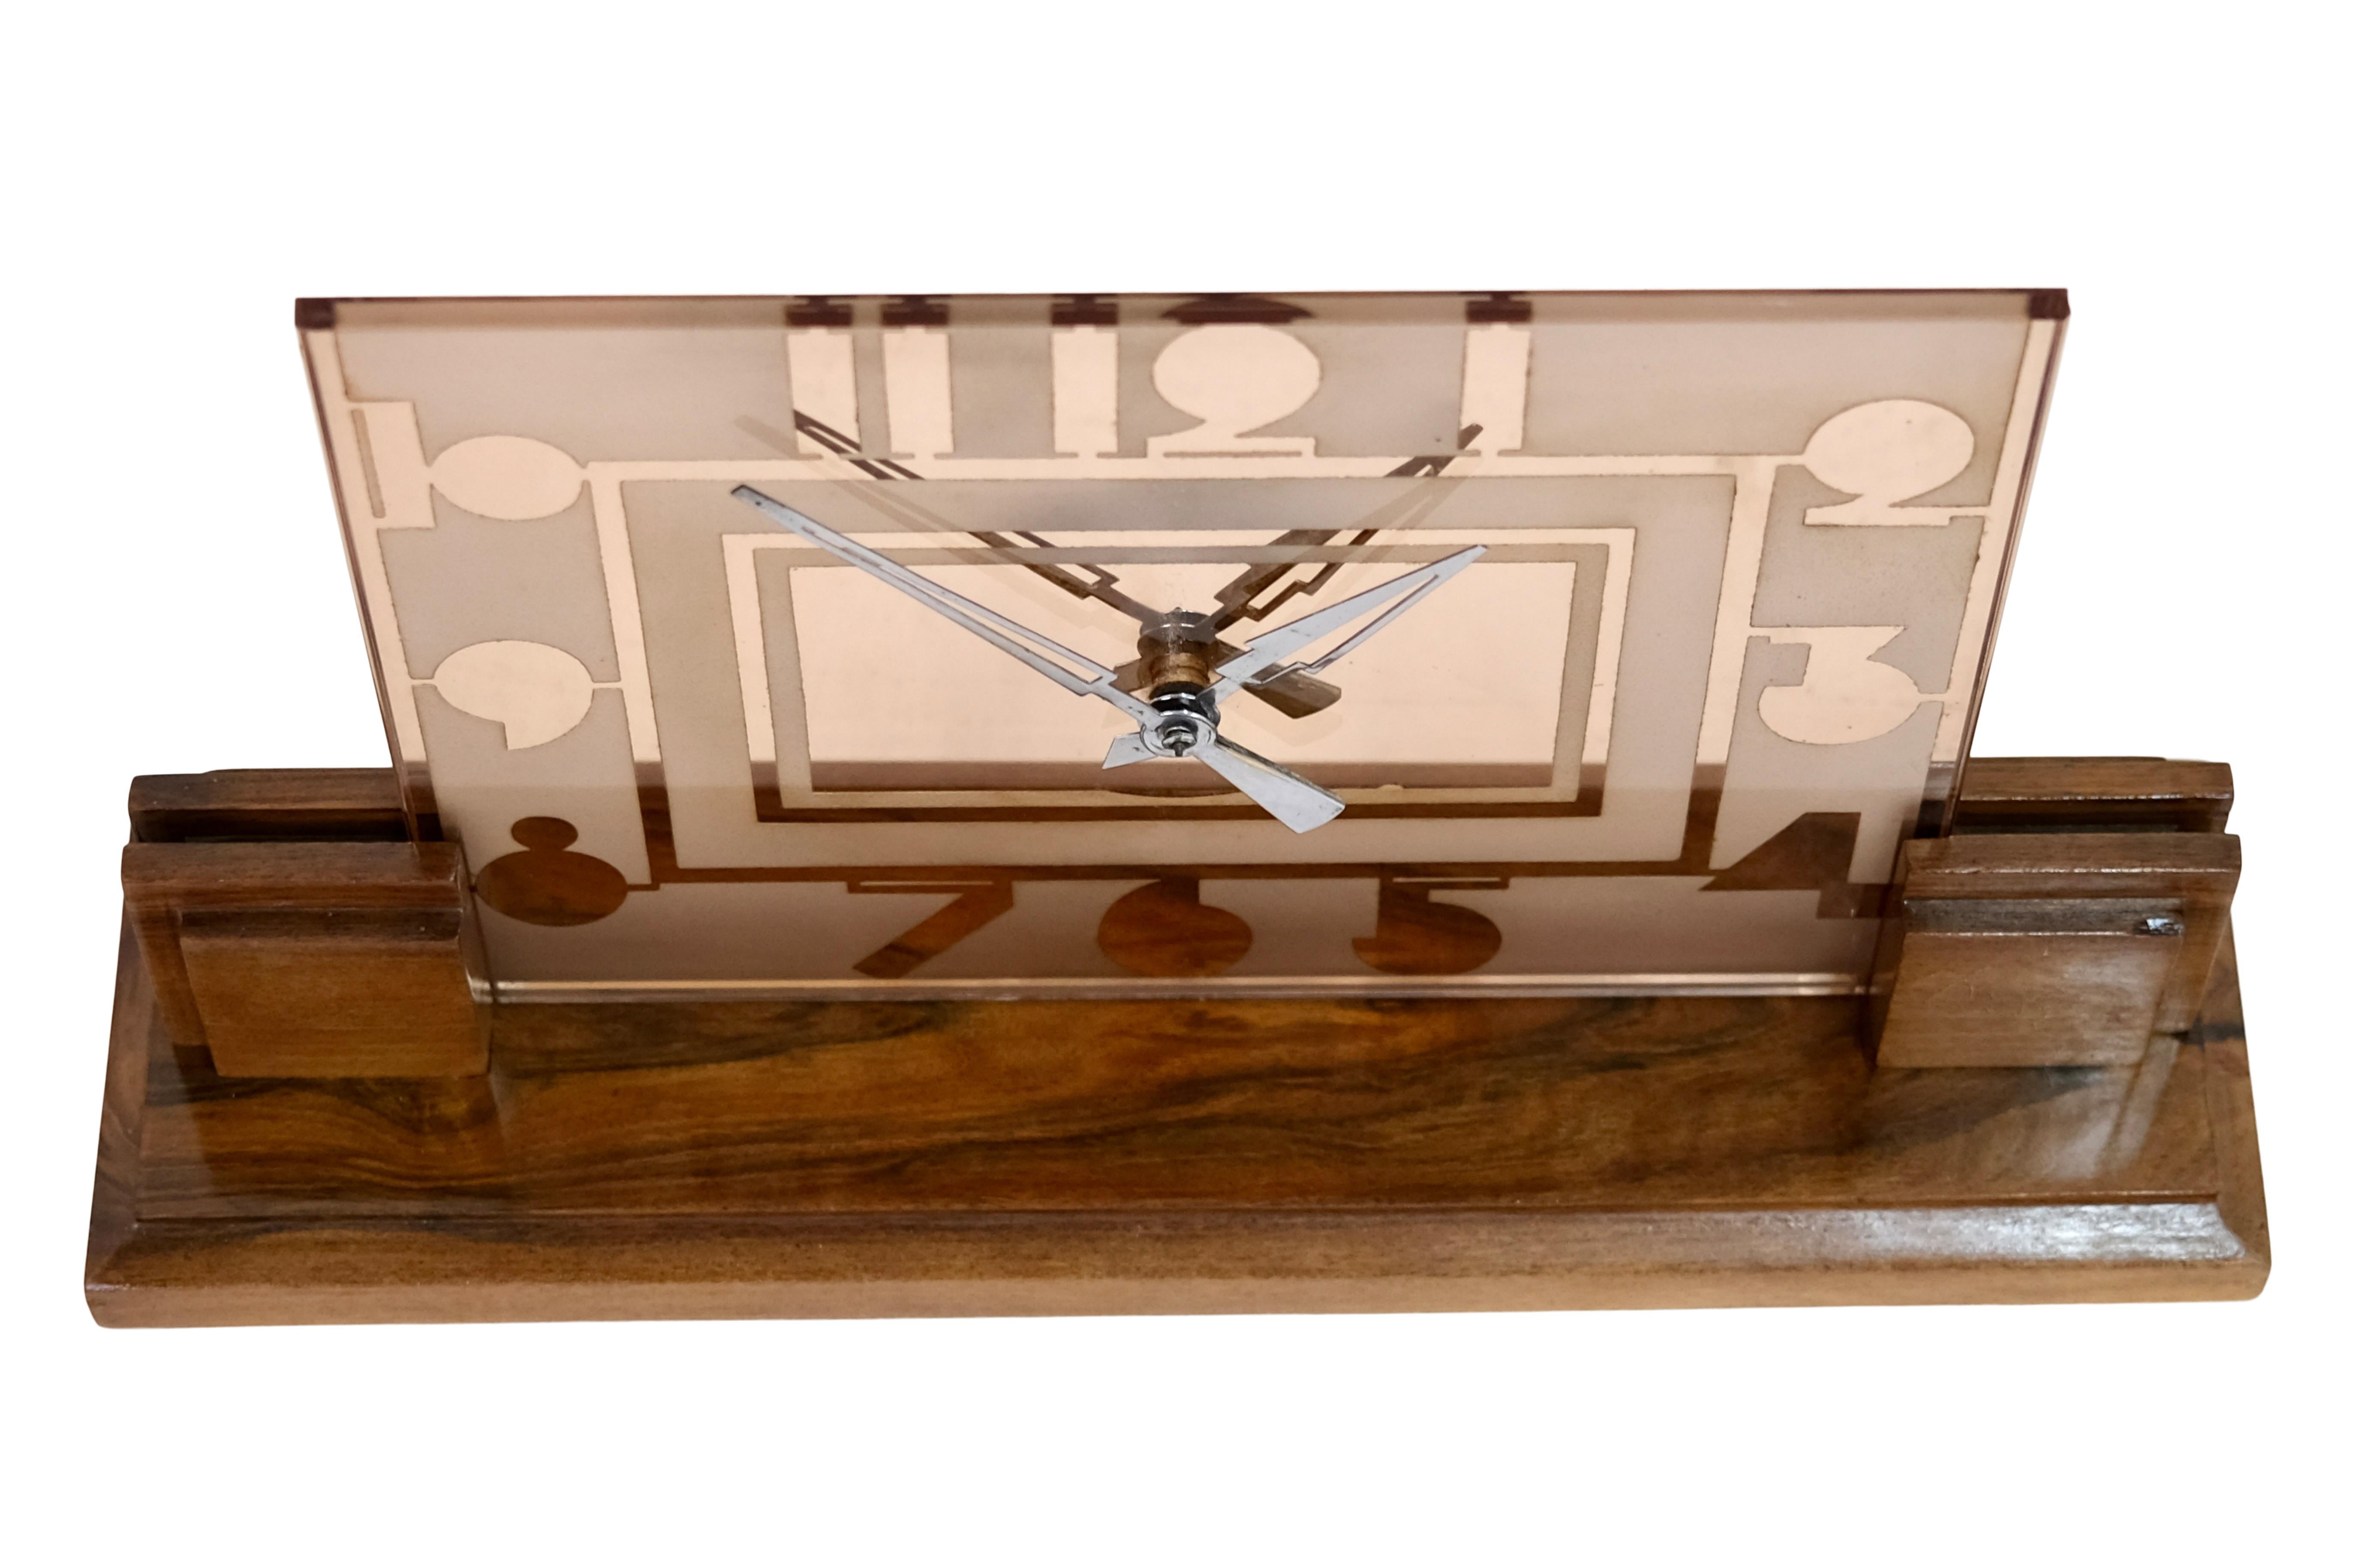 Tisch-/Schreibtischuhr auf Holzsockel
Rosaline farbiges Glas Zifferblatt mit Art Deco typischen Ziffern

Original Art Deco, Frankreich 1930er Jahre

Breite: 40 cm
Höhe: 24 cm
Tiefe: 11 cm